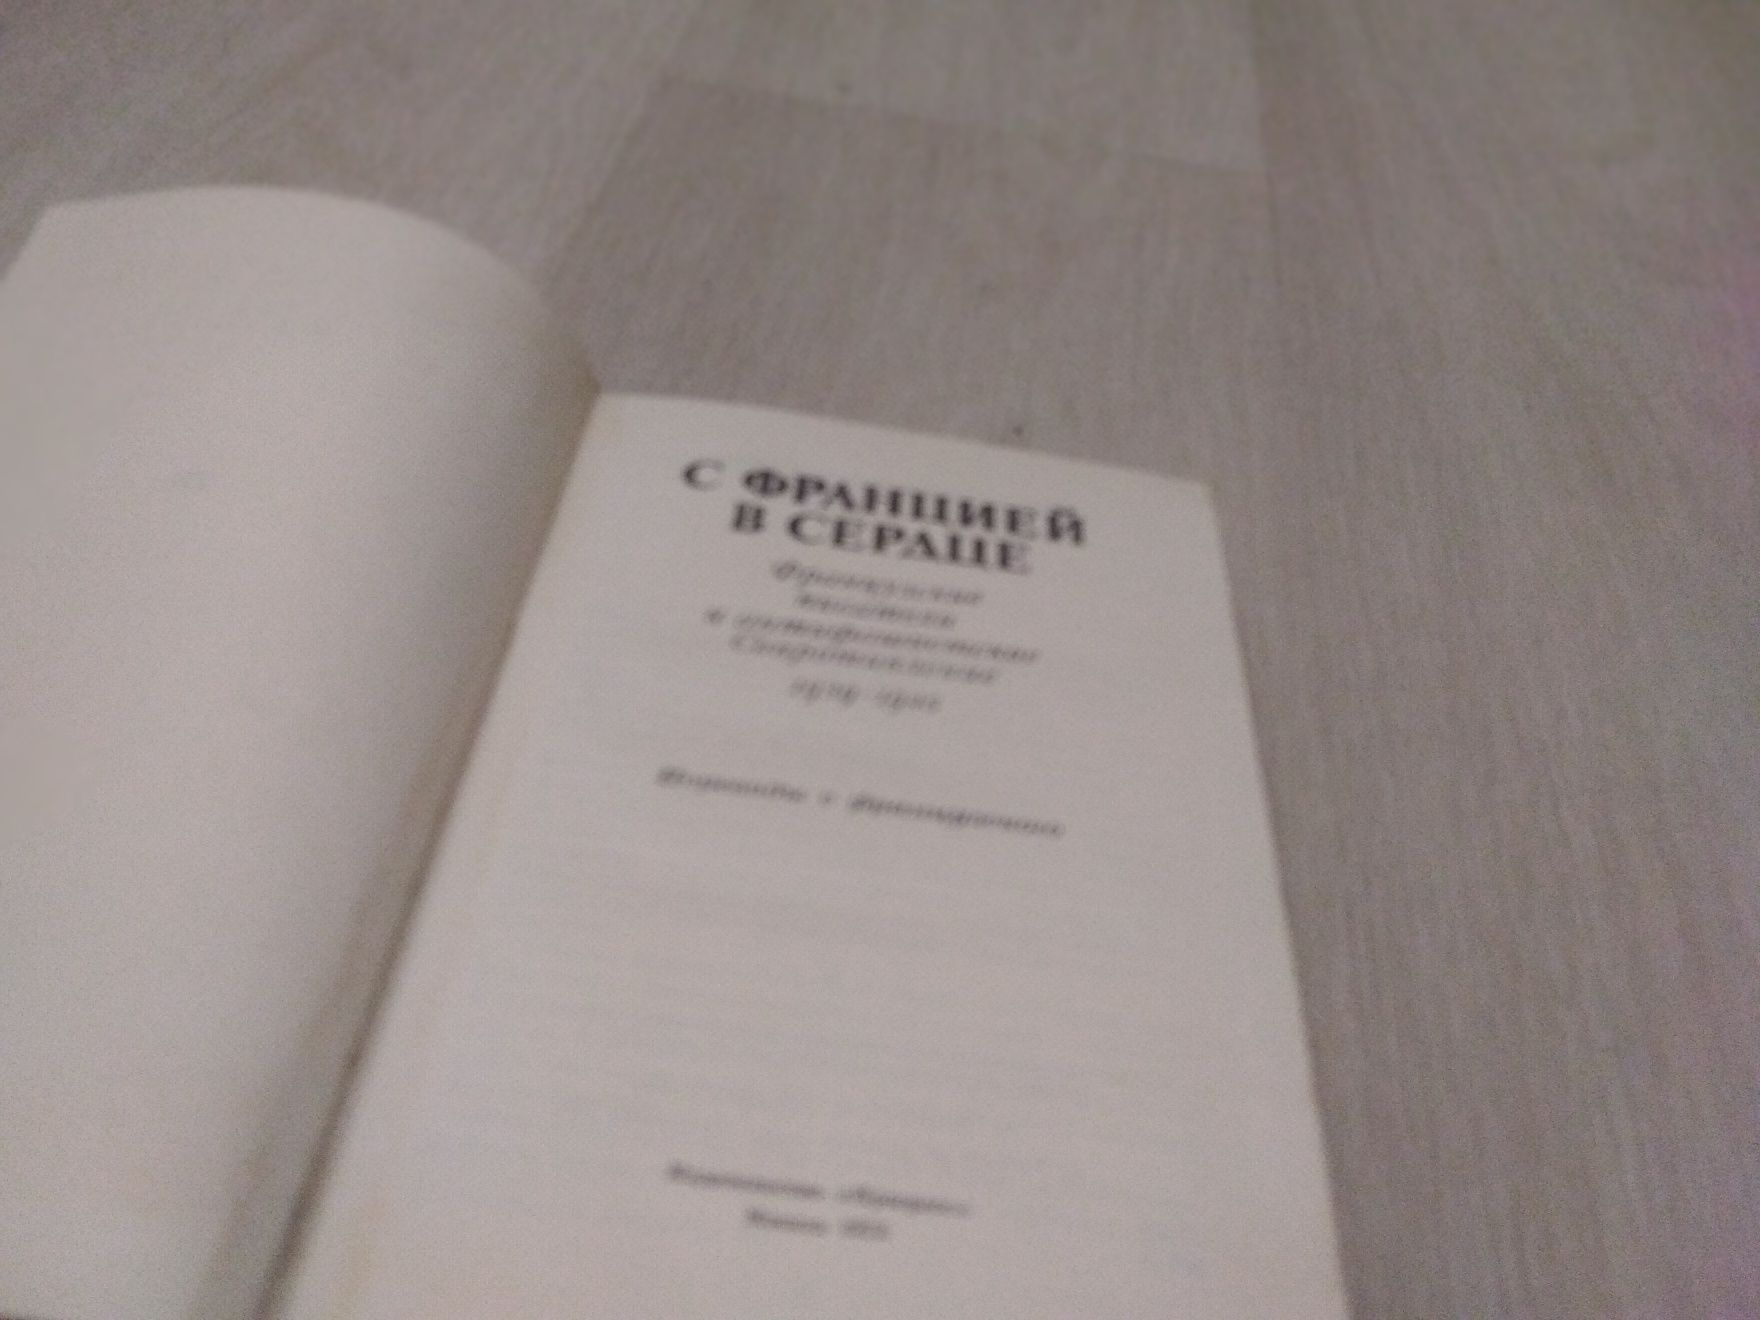 Книга С Францией в сердце збірка авторів 2 світової 1939-45